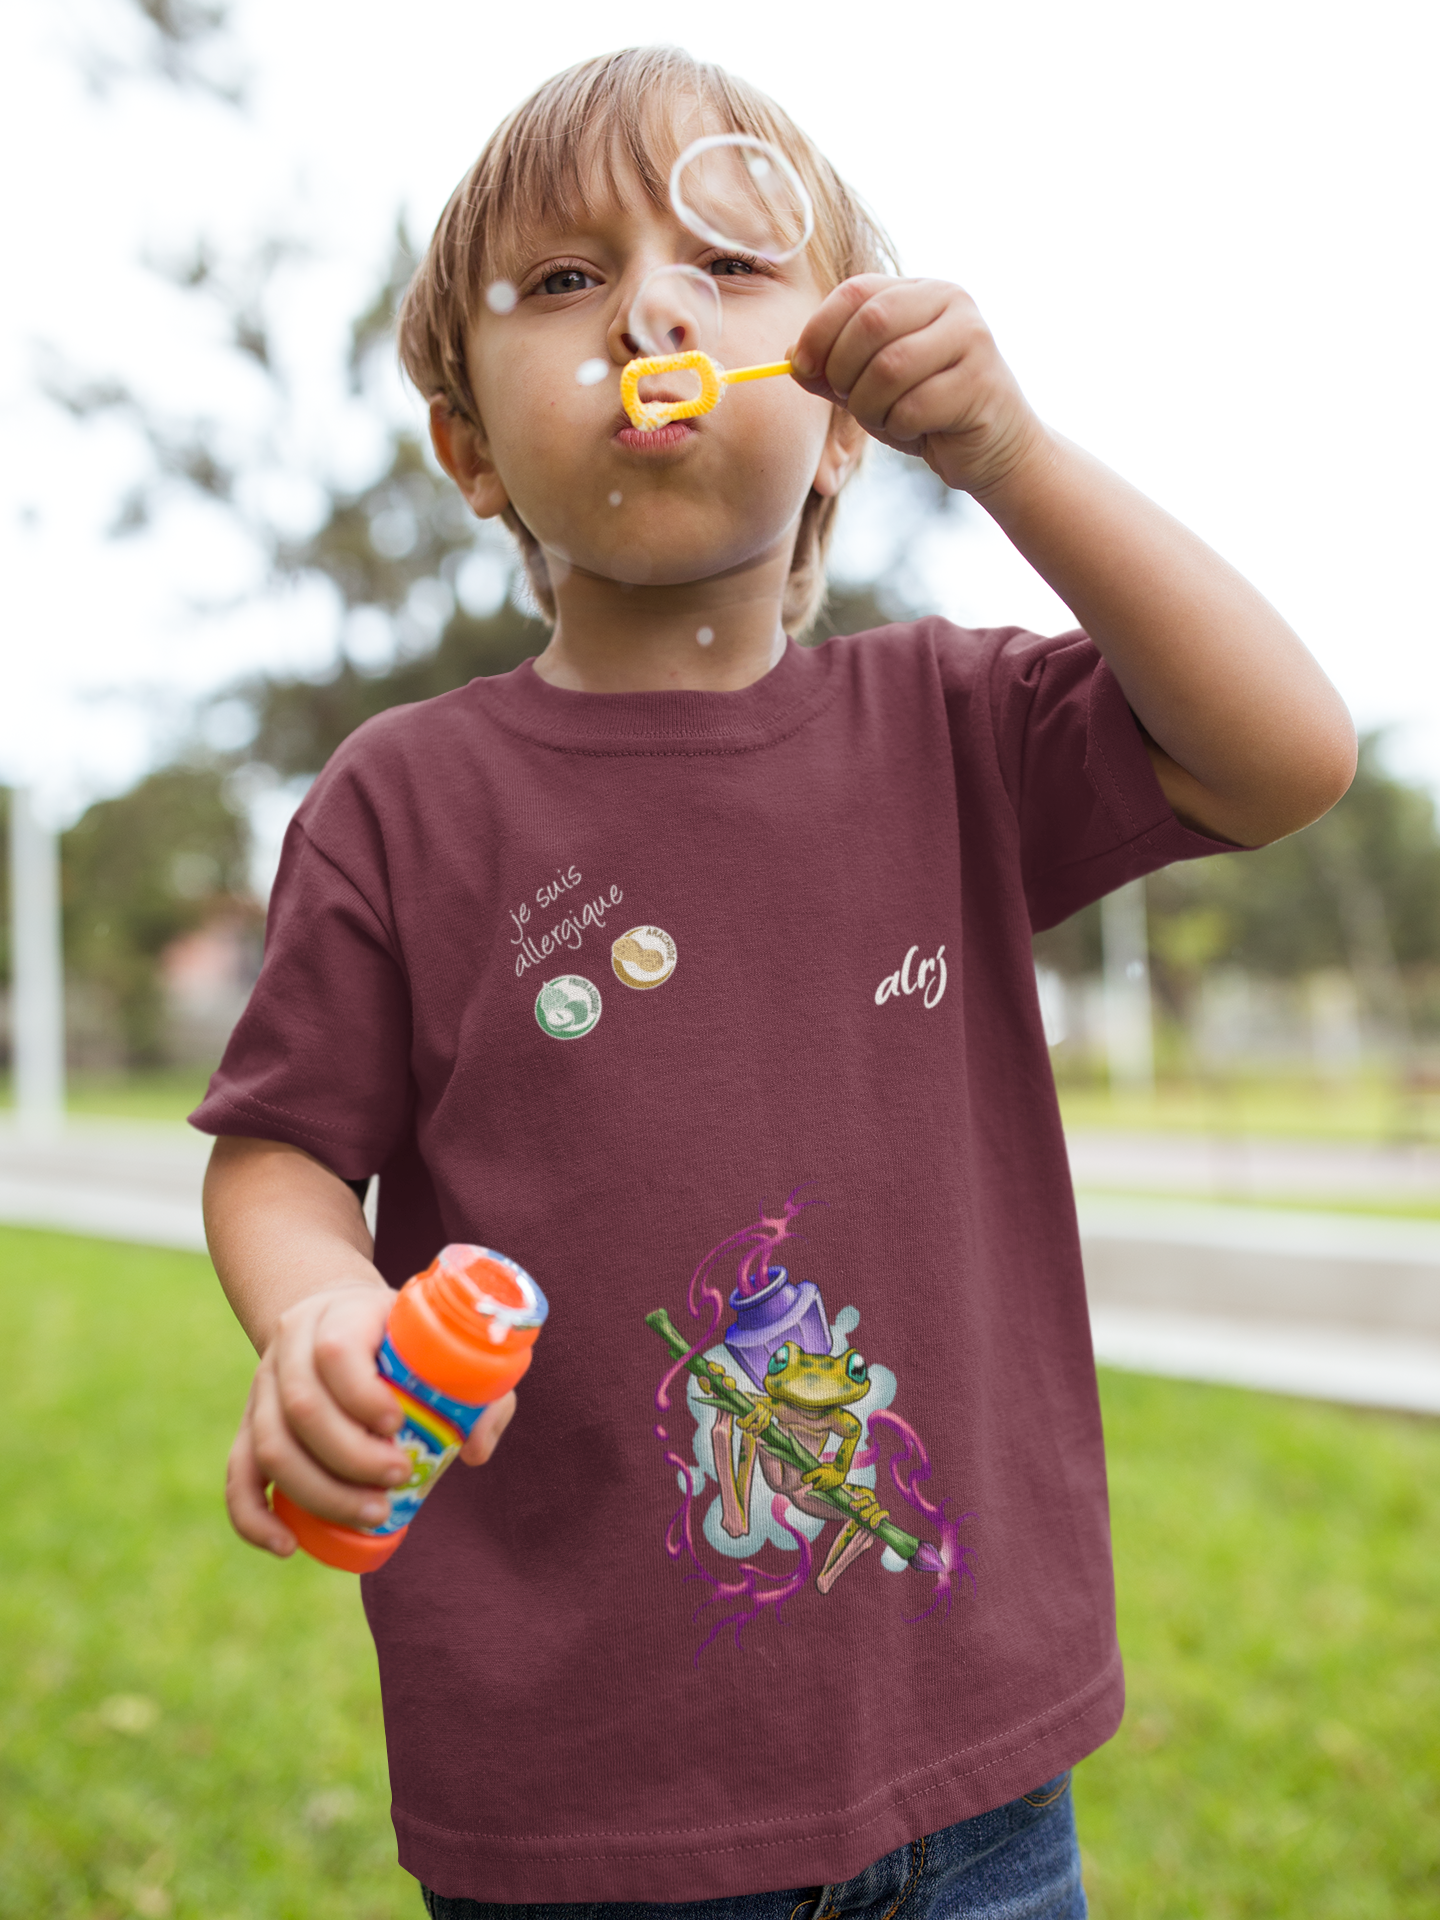 allergie alimentaire chez l'enfant la prévention par un t-shirt au motif grenouille